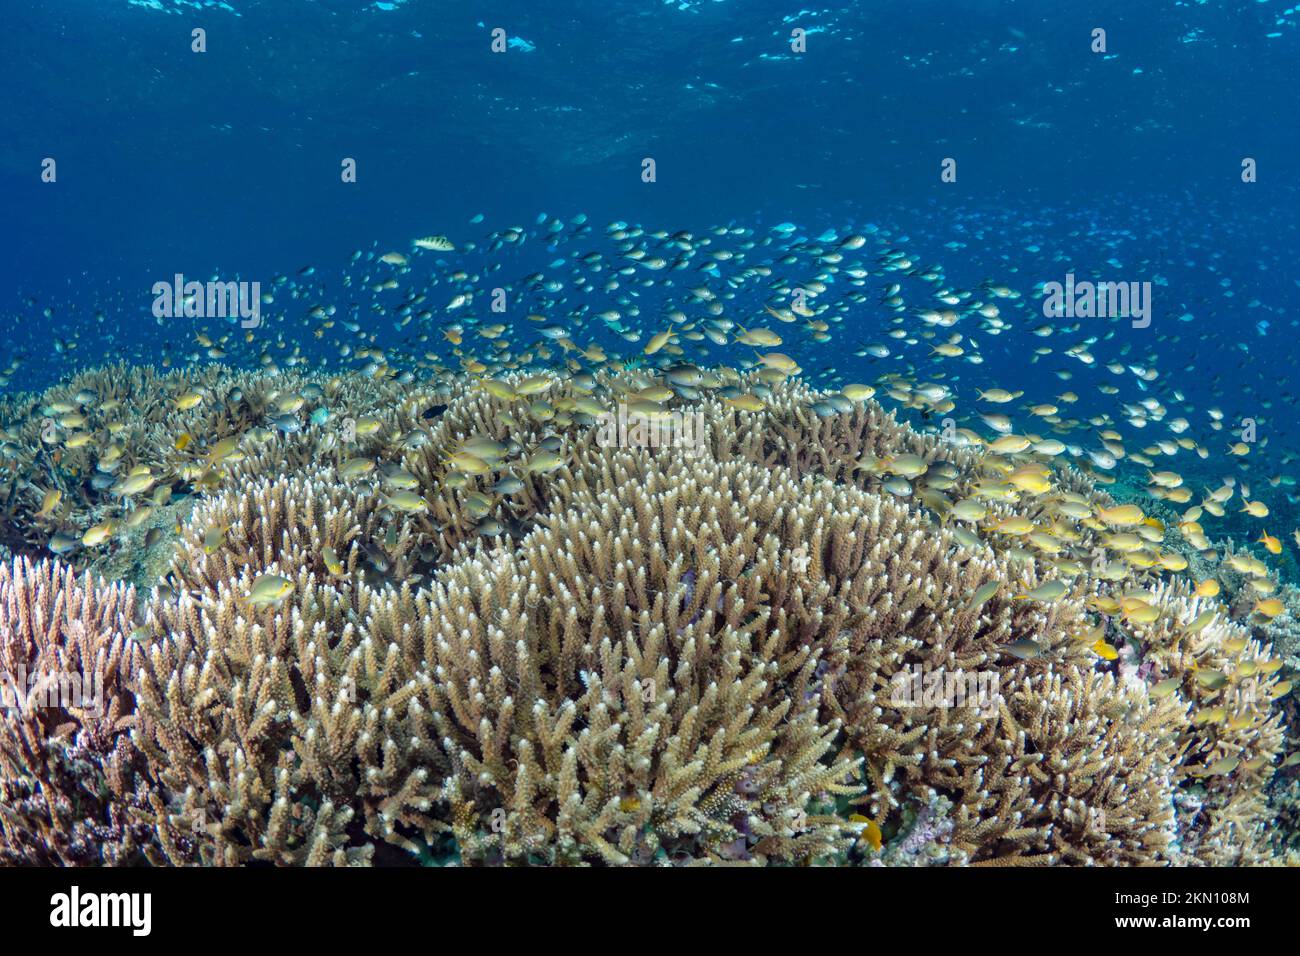 Biodiversité ultime de l'Indo pacific avec scolarisation des poissons tropicaux au-dessus d'un écosystème de récif corallien abondant et sain. Banque D'Images